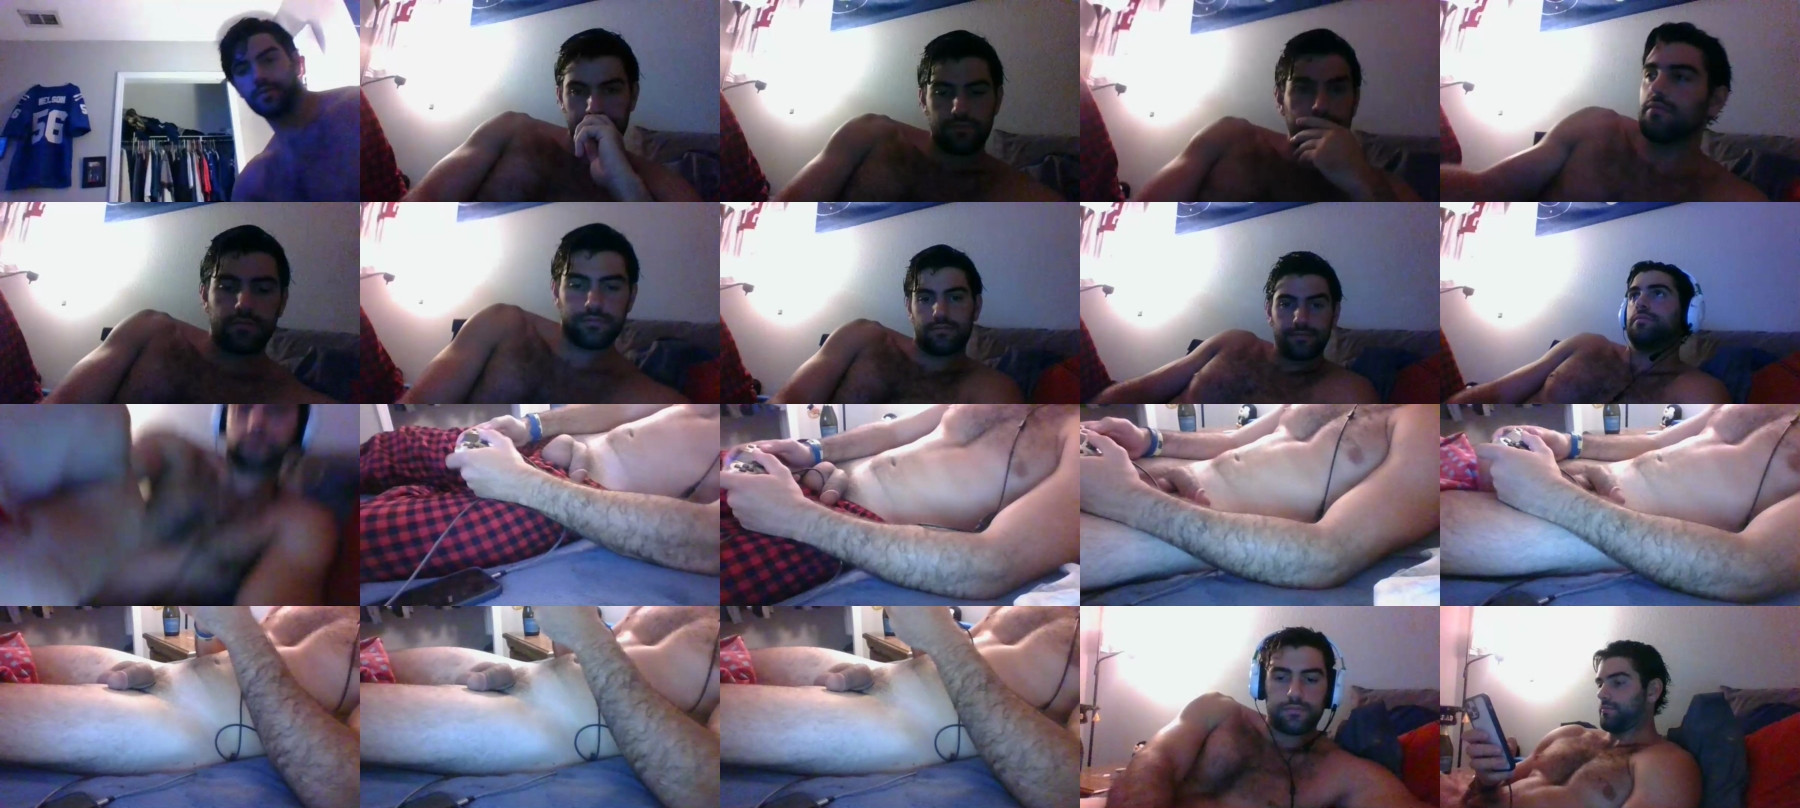 Sexyitalian1691  19-04-2021 Male Webcam